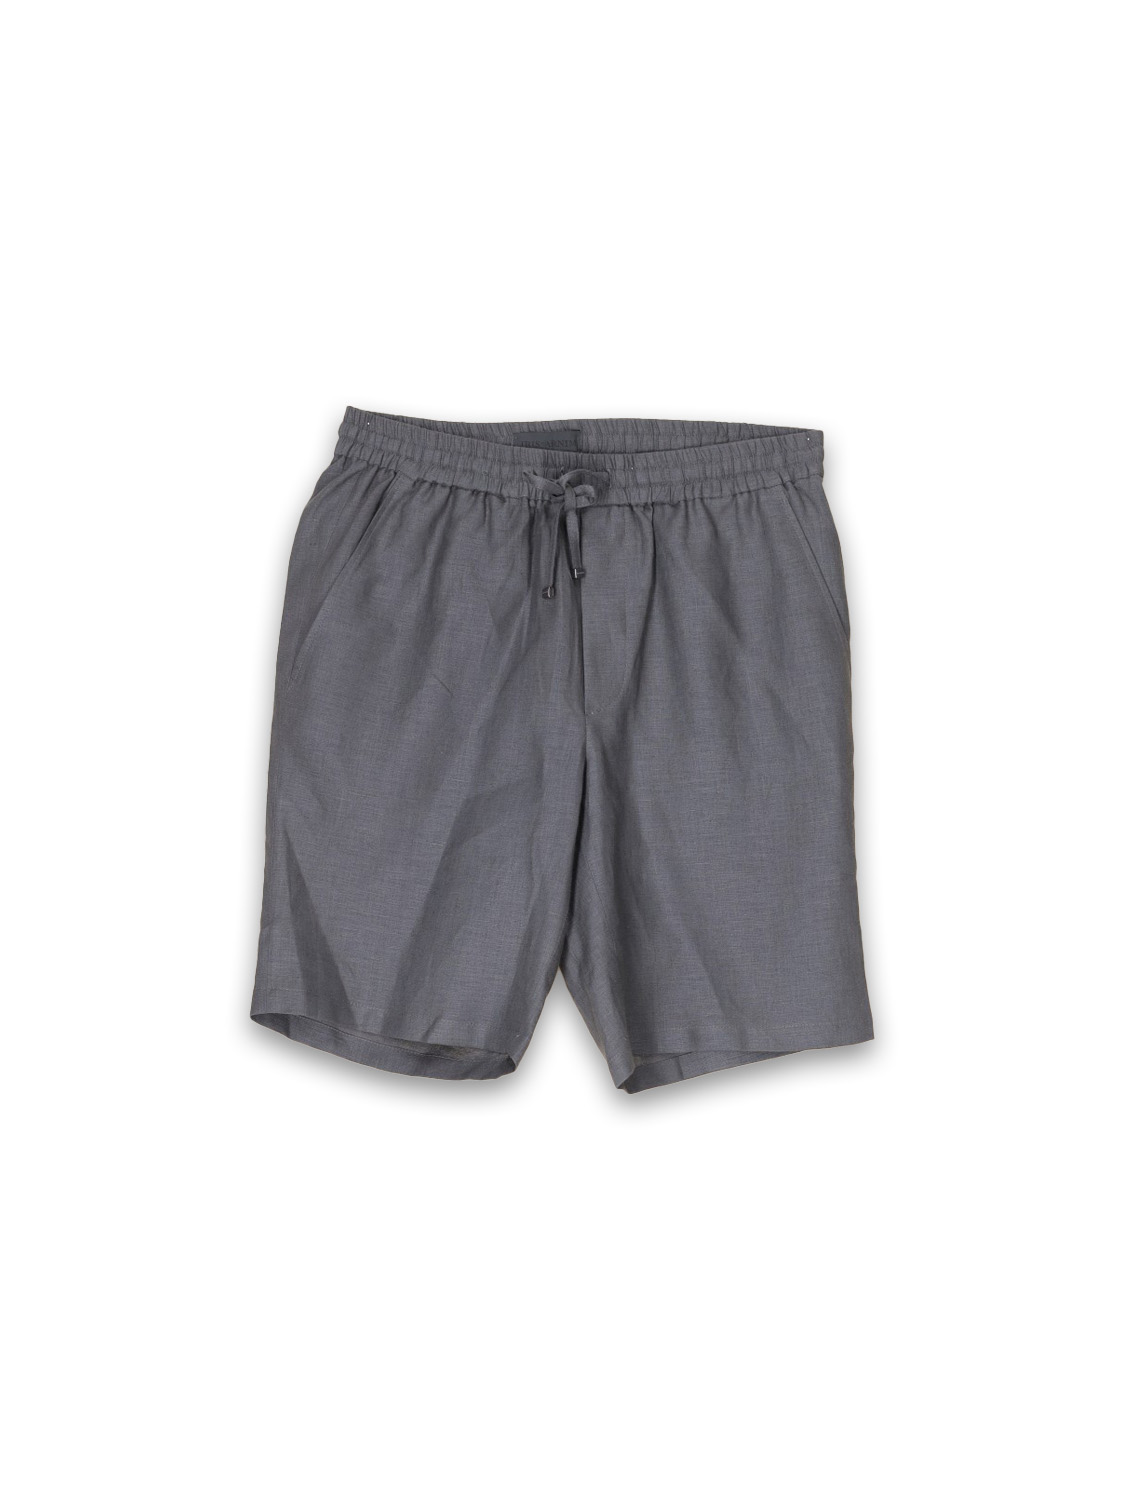 Lex linen shorts 